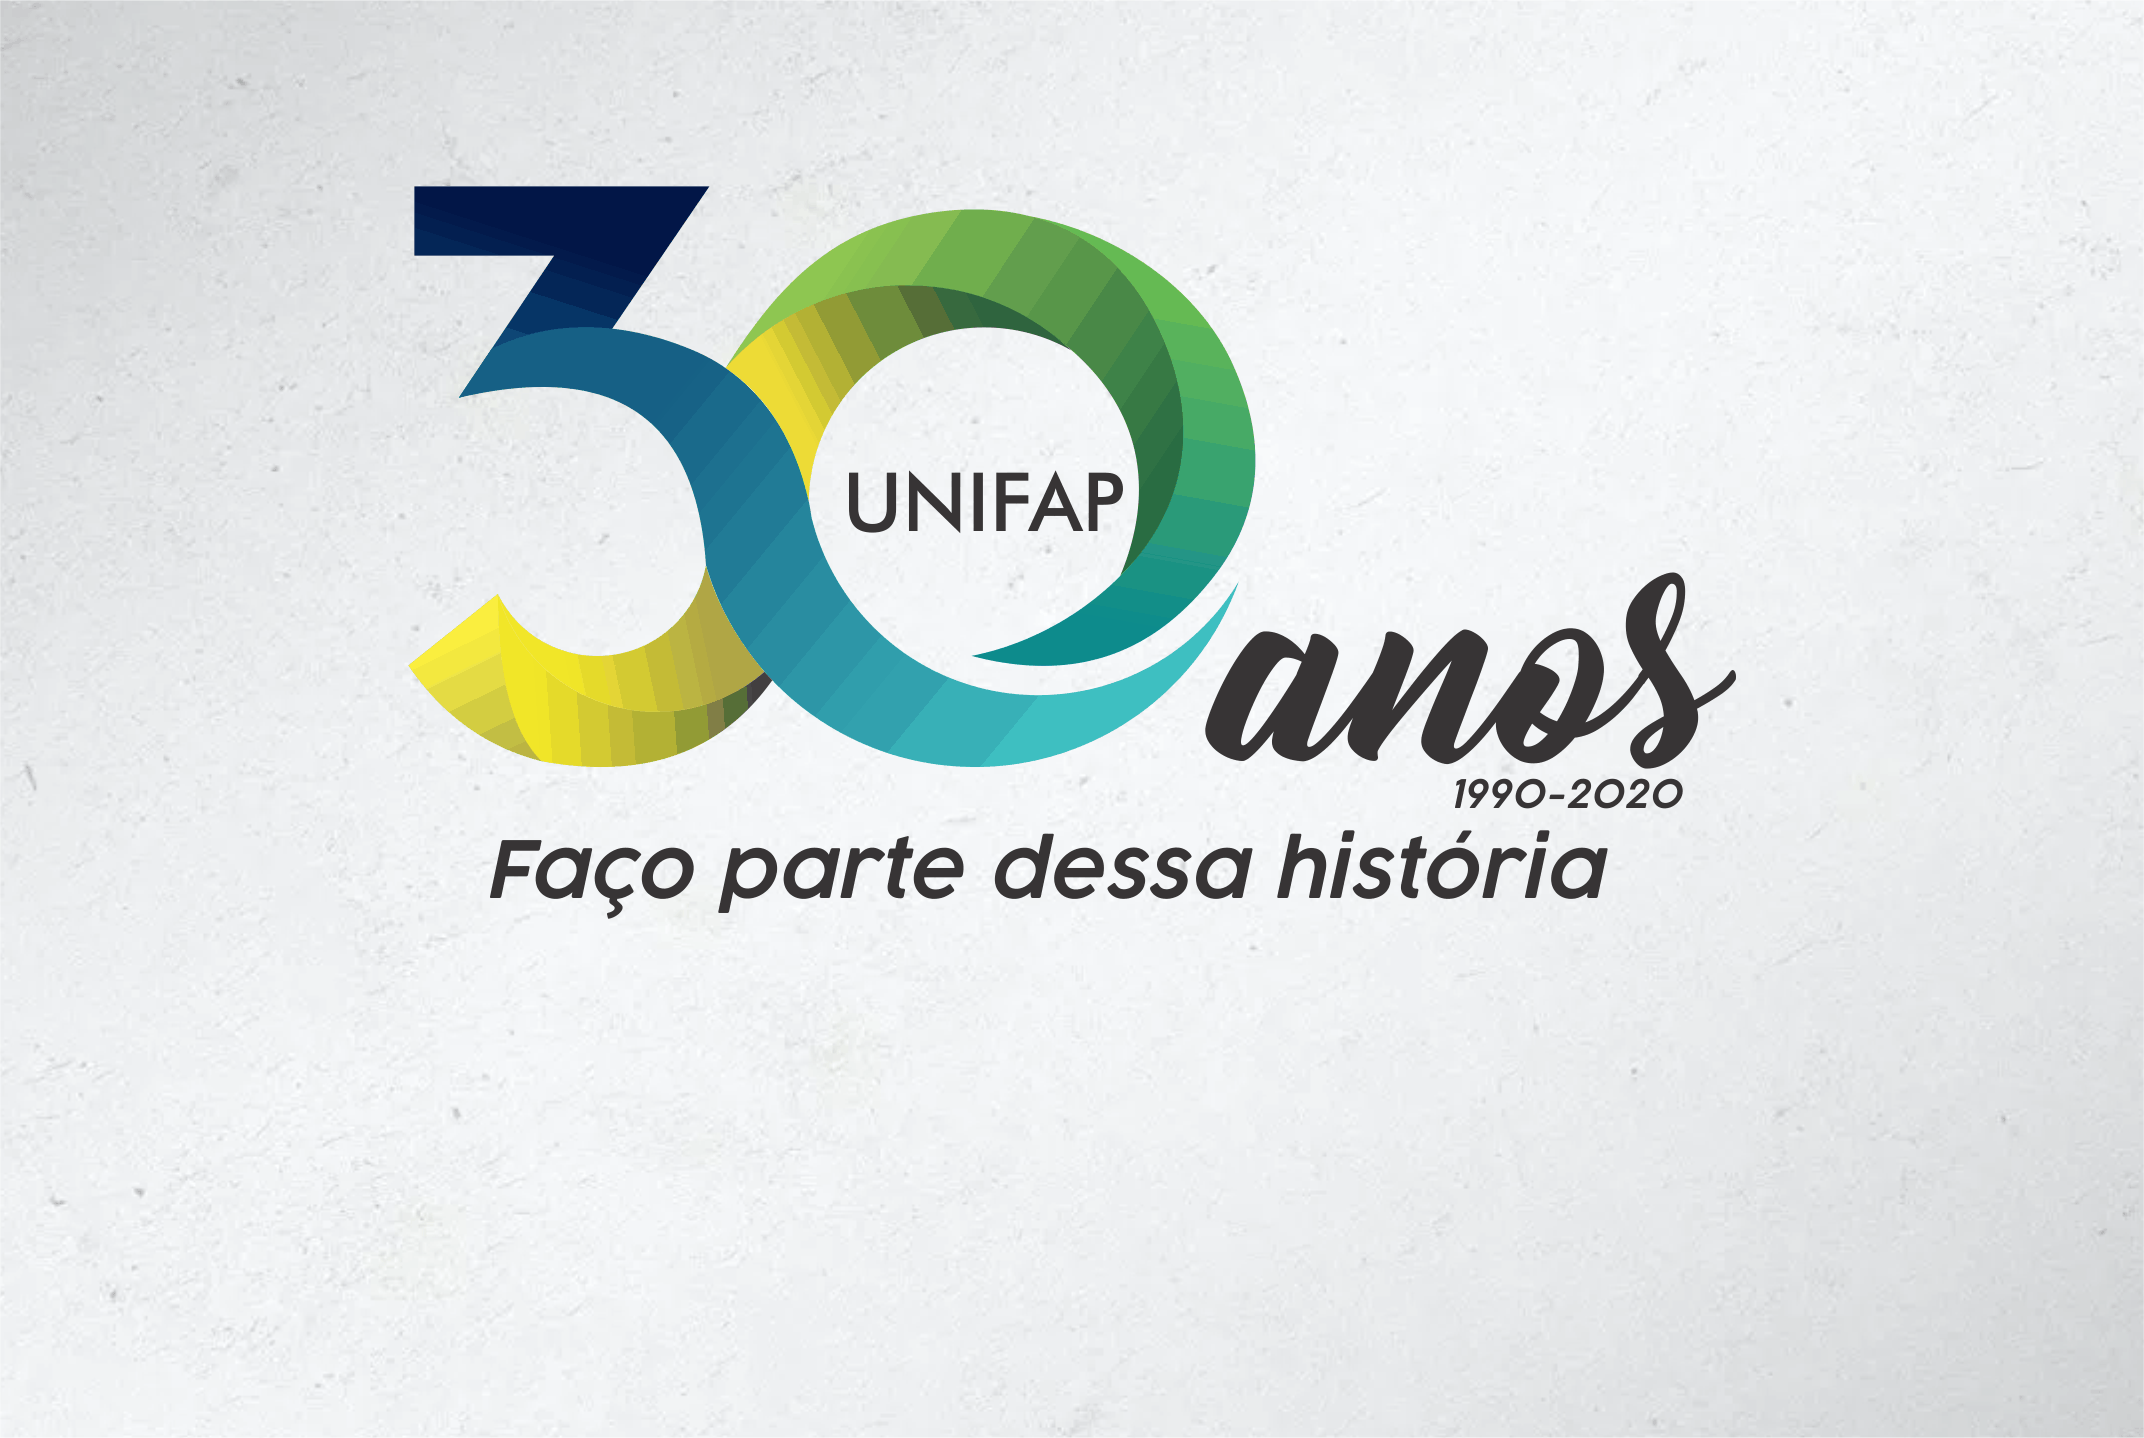 “Orgulho de ser UNIFAP” traz mensagem do Pró-reitor, Sílvio Sousa